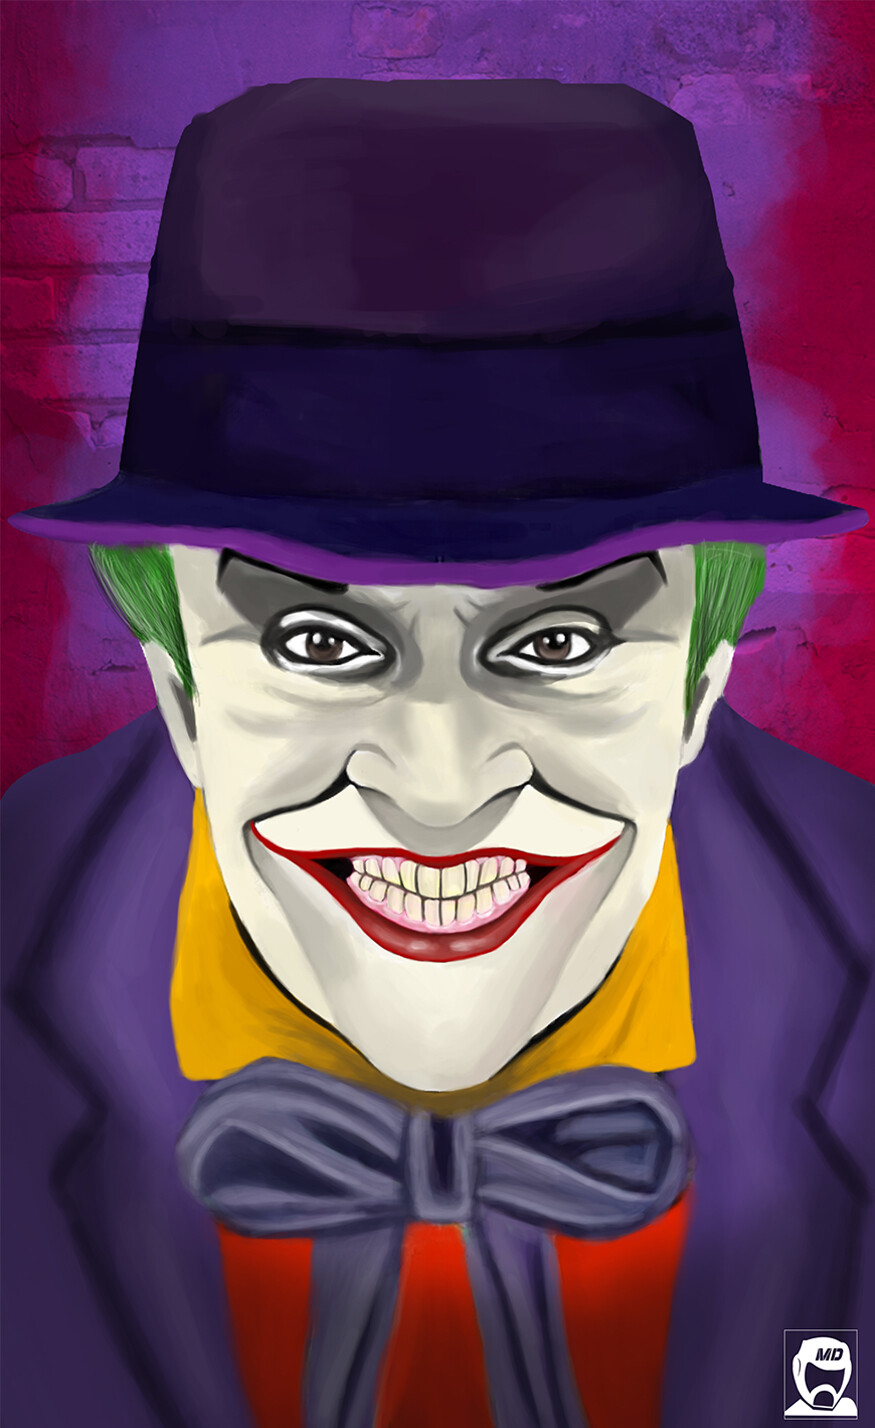 ArtStation - Concept Art Joker